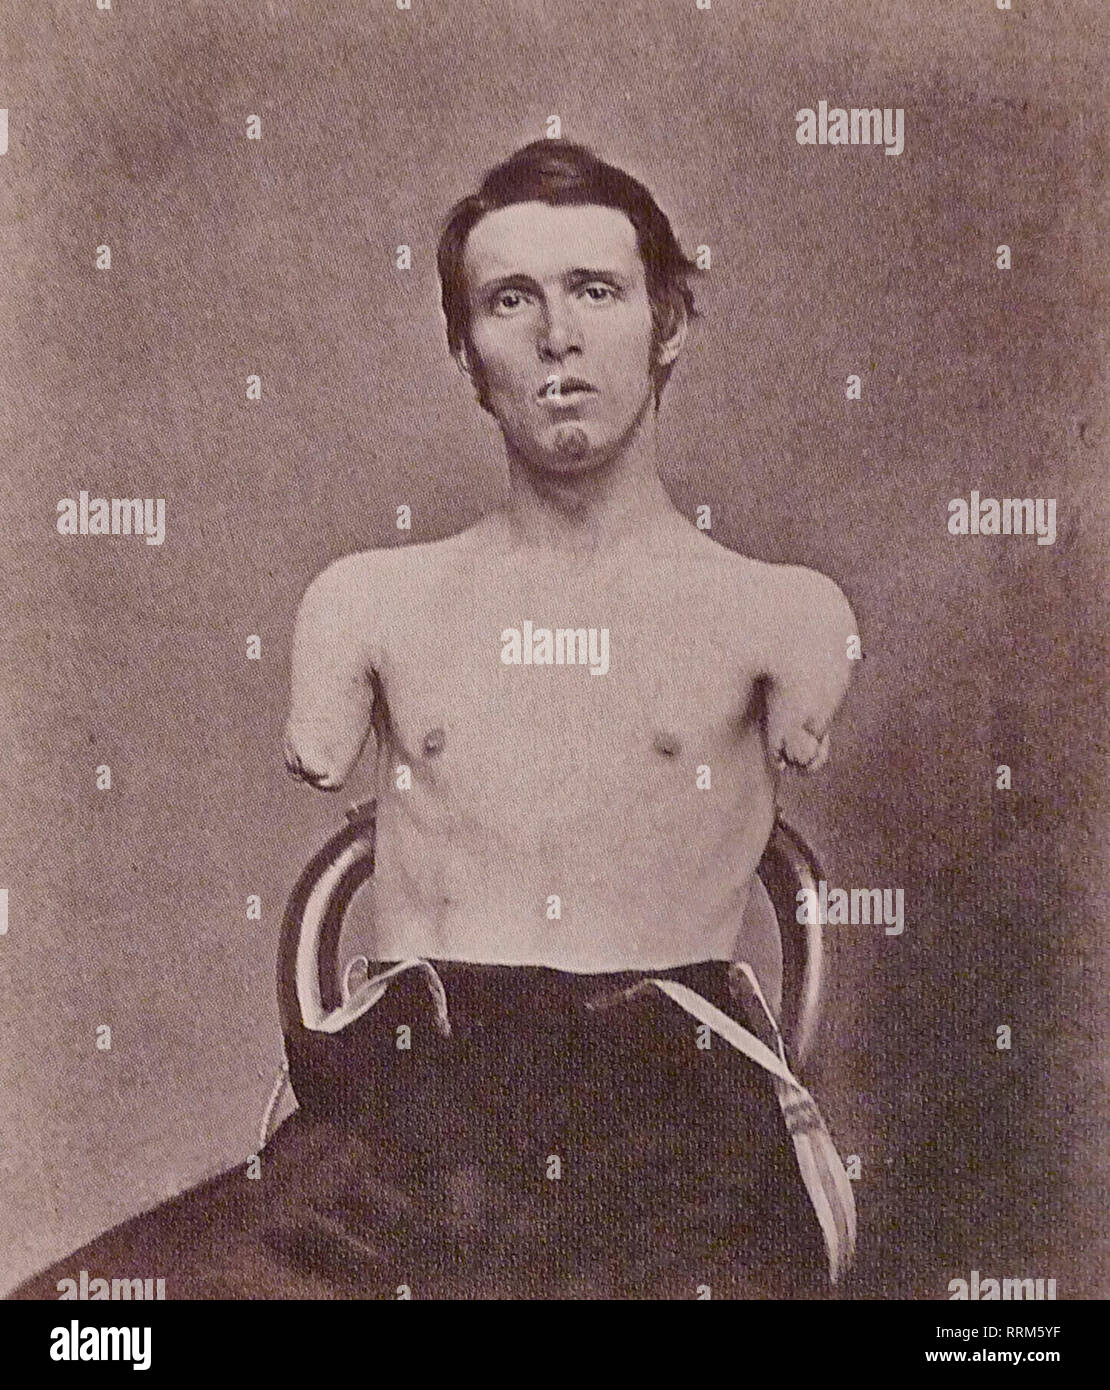 Alfred A. Stratton verlor beide Arme im Alter von 19 am 18. Juni 1864 von einem kanonenschuss im Amerikanischen Bürgerkrieg. Die Amputation wurde durch als Coe durchgeführt. Stratton starb als ein Vater von zwei Kindern im Alter von 29 Jahren. Stockfoto